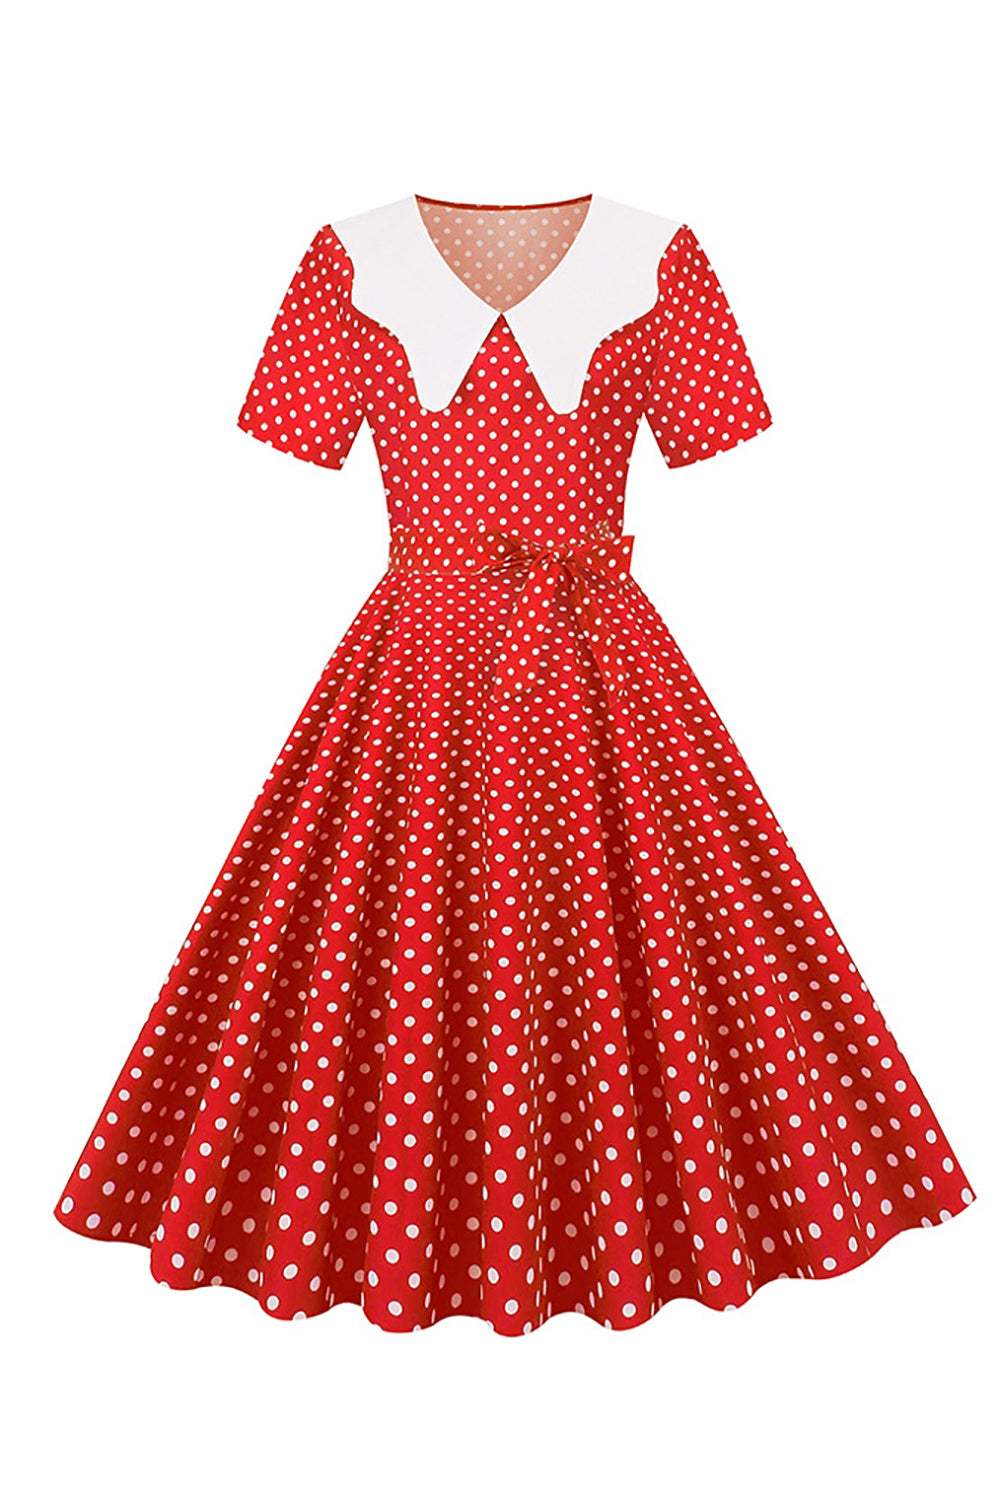 Hepburn Red Polka Dots Print Vintage Kjole med Bælte